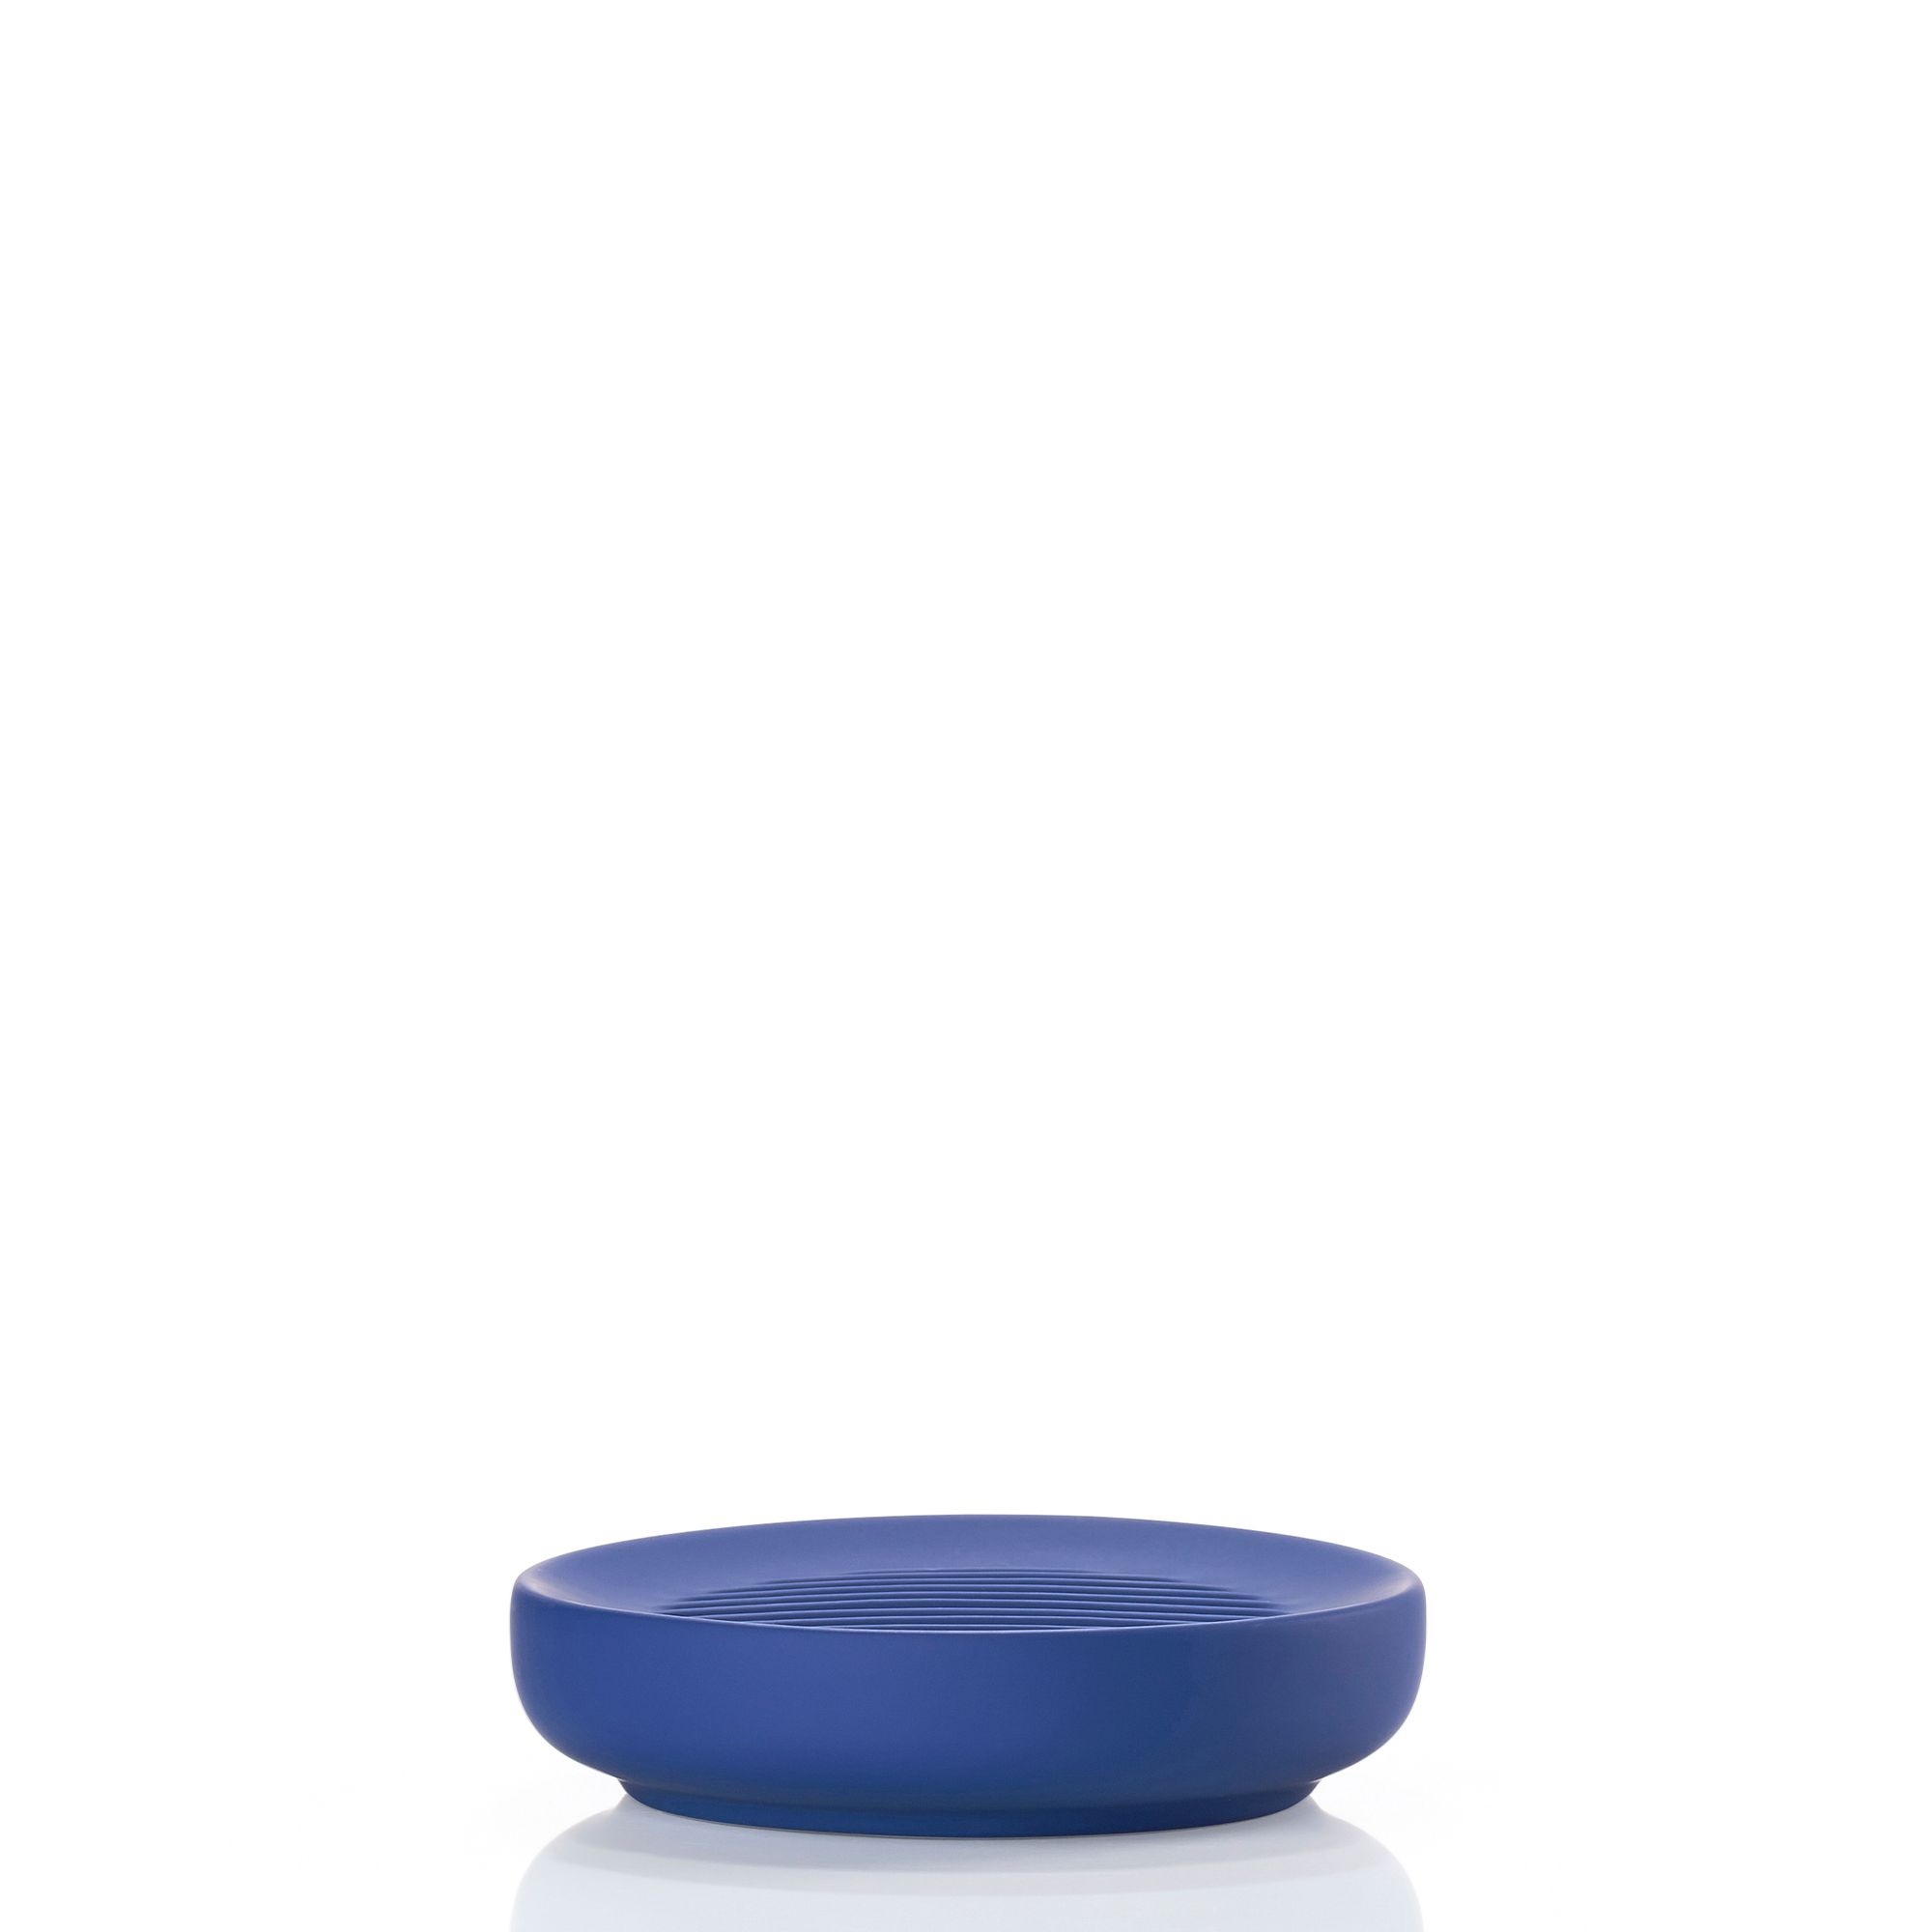 Zone - Ume Soap Dish - Indigo Blue